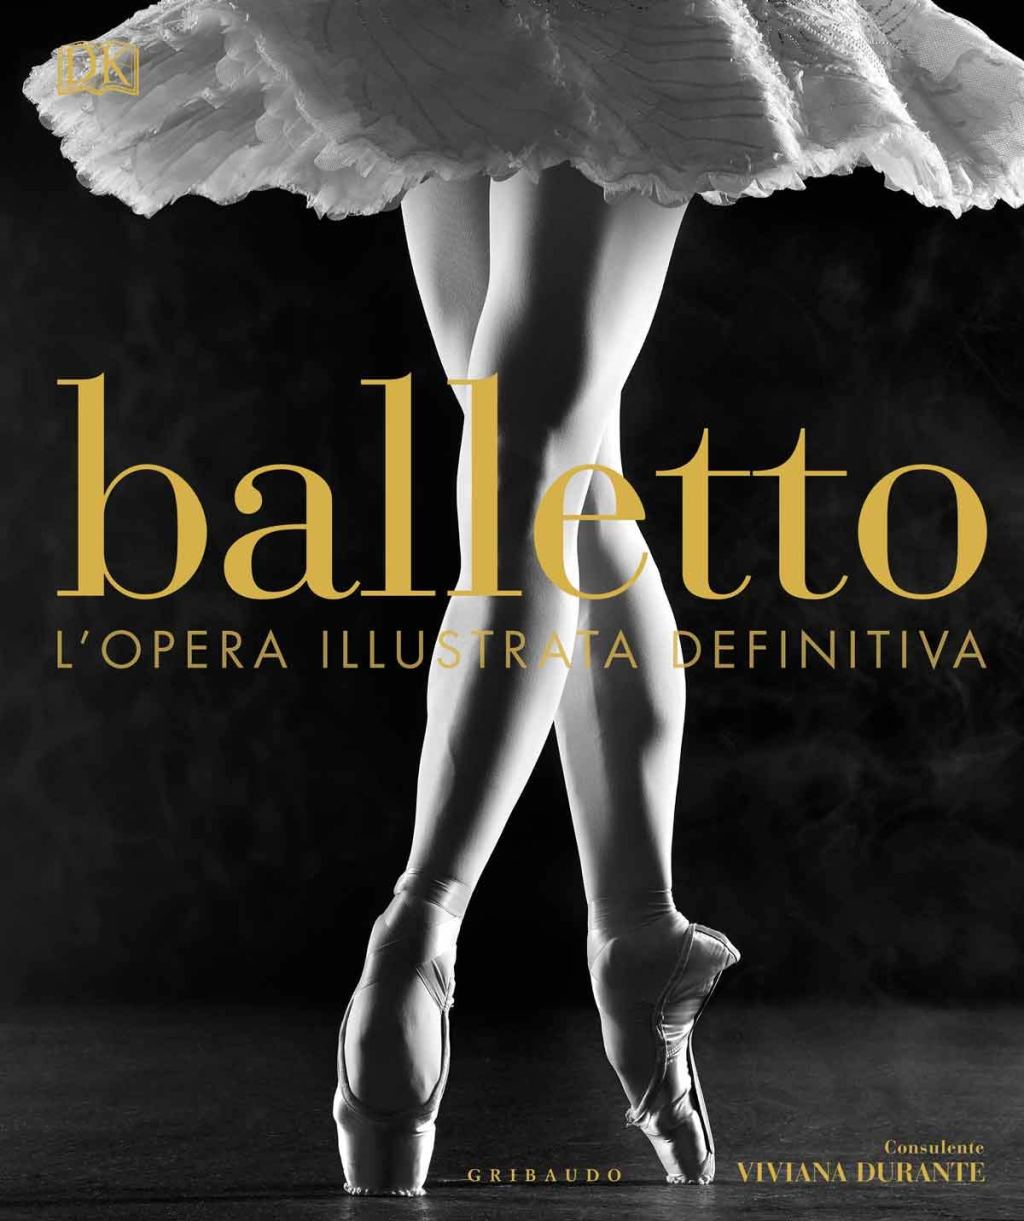 Balletto: un libro da collezione per gli appassionati di danza